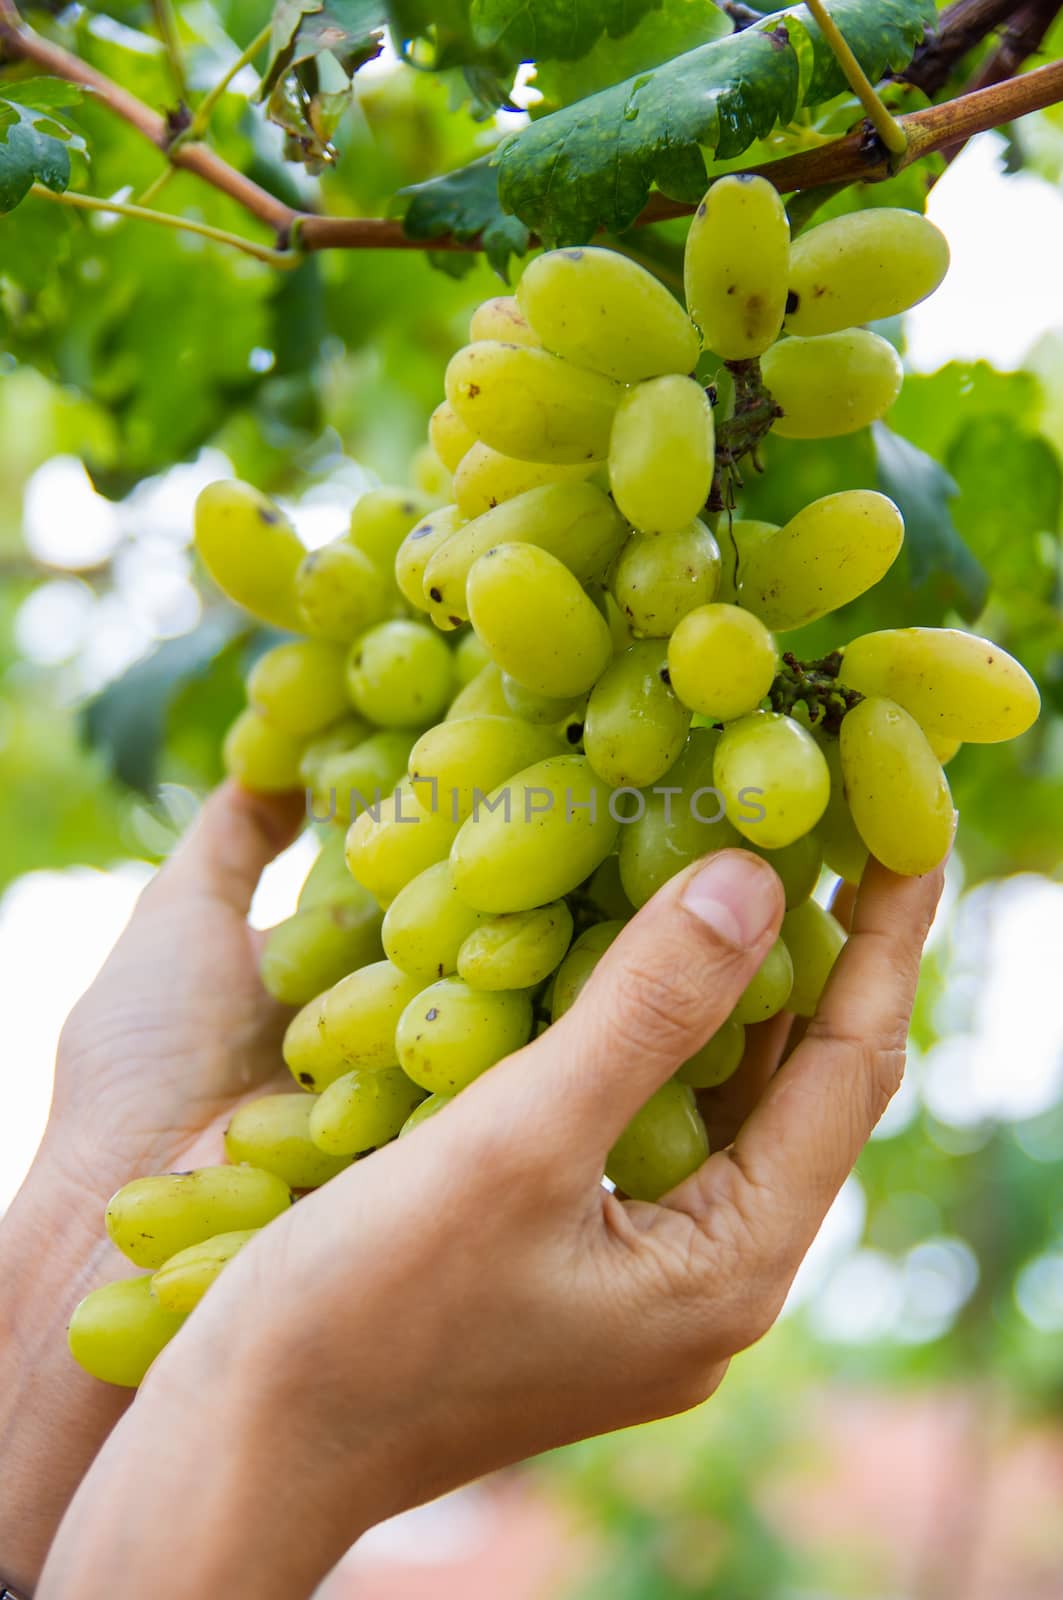 grapes by seksan44